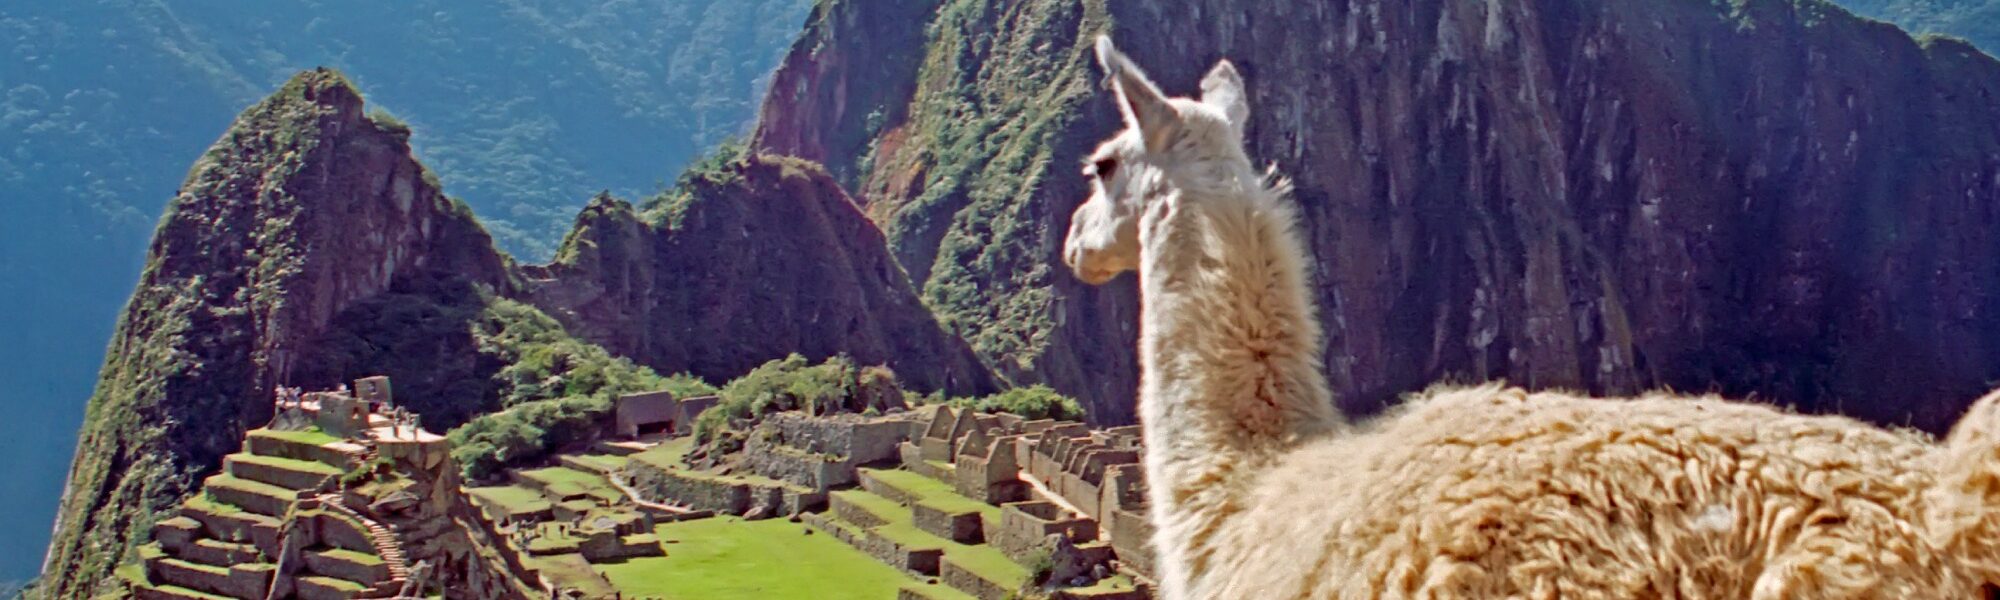 Peru reis - Lama bij Machu Picchu